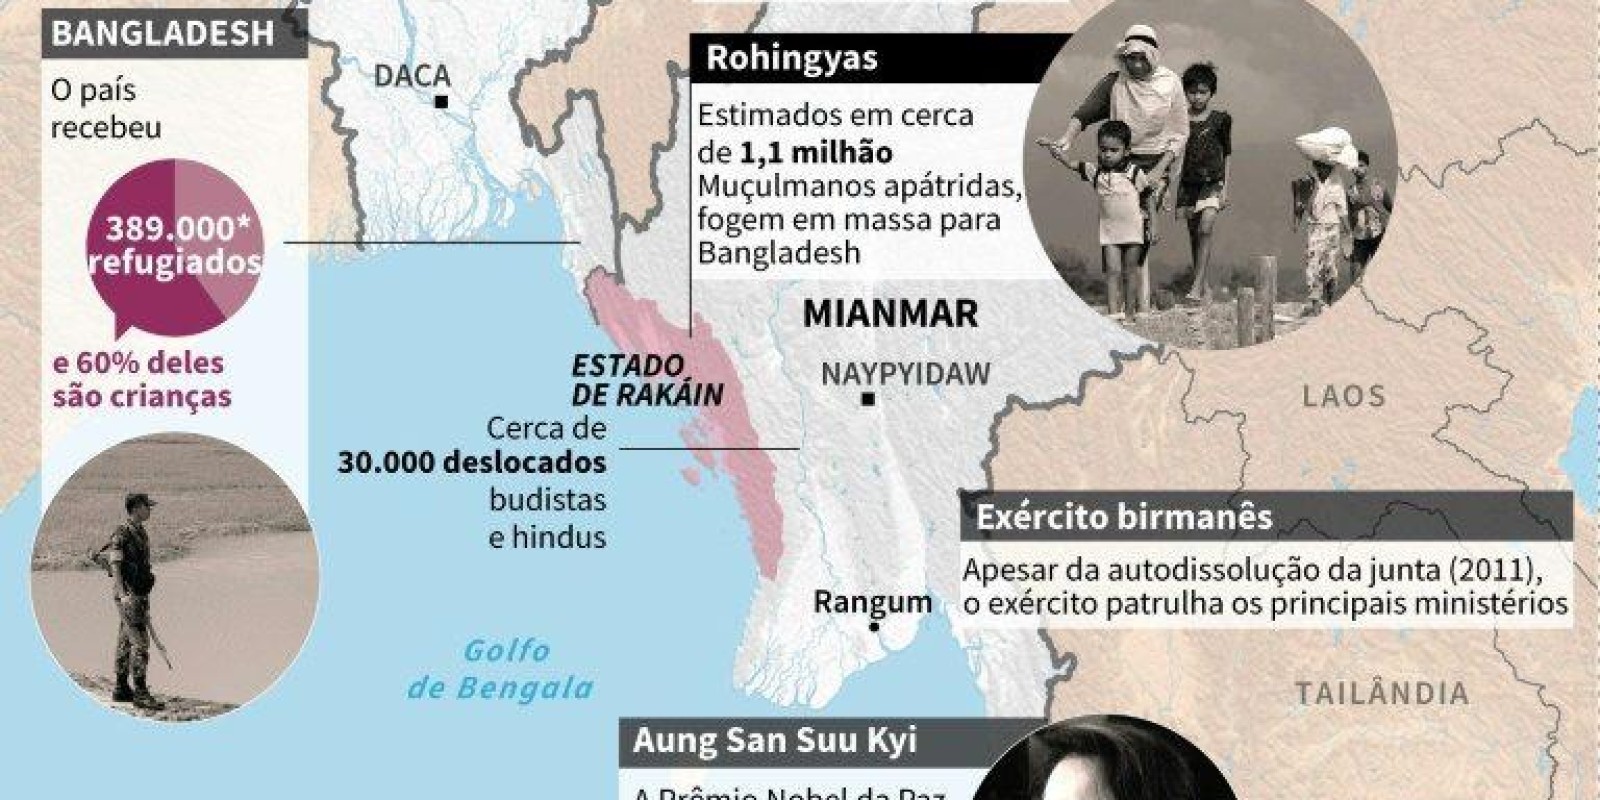 Rohingyas: 10 fatos sobre a maior população apátrida do mundo